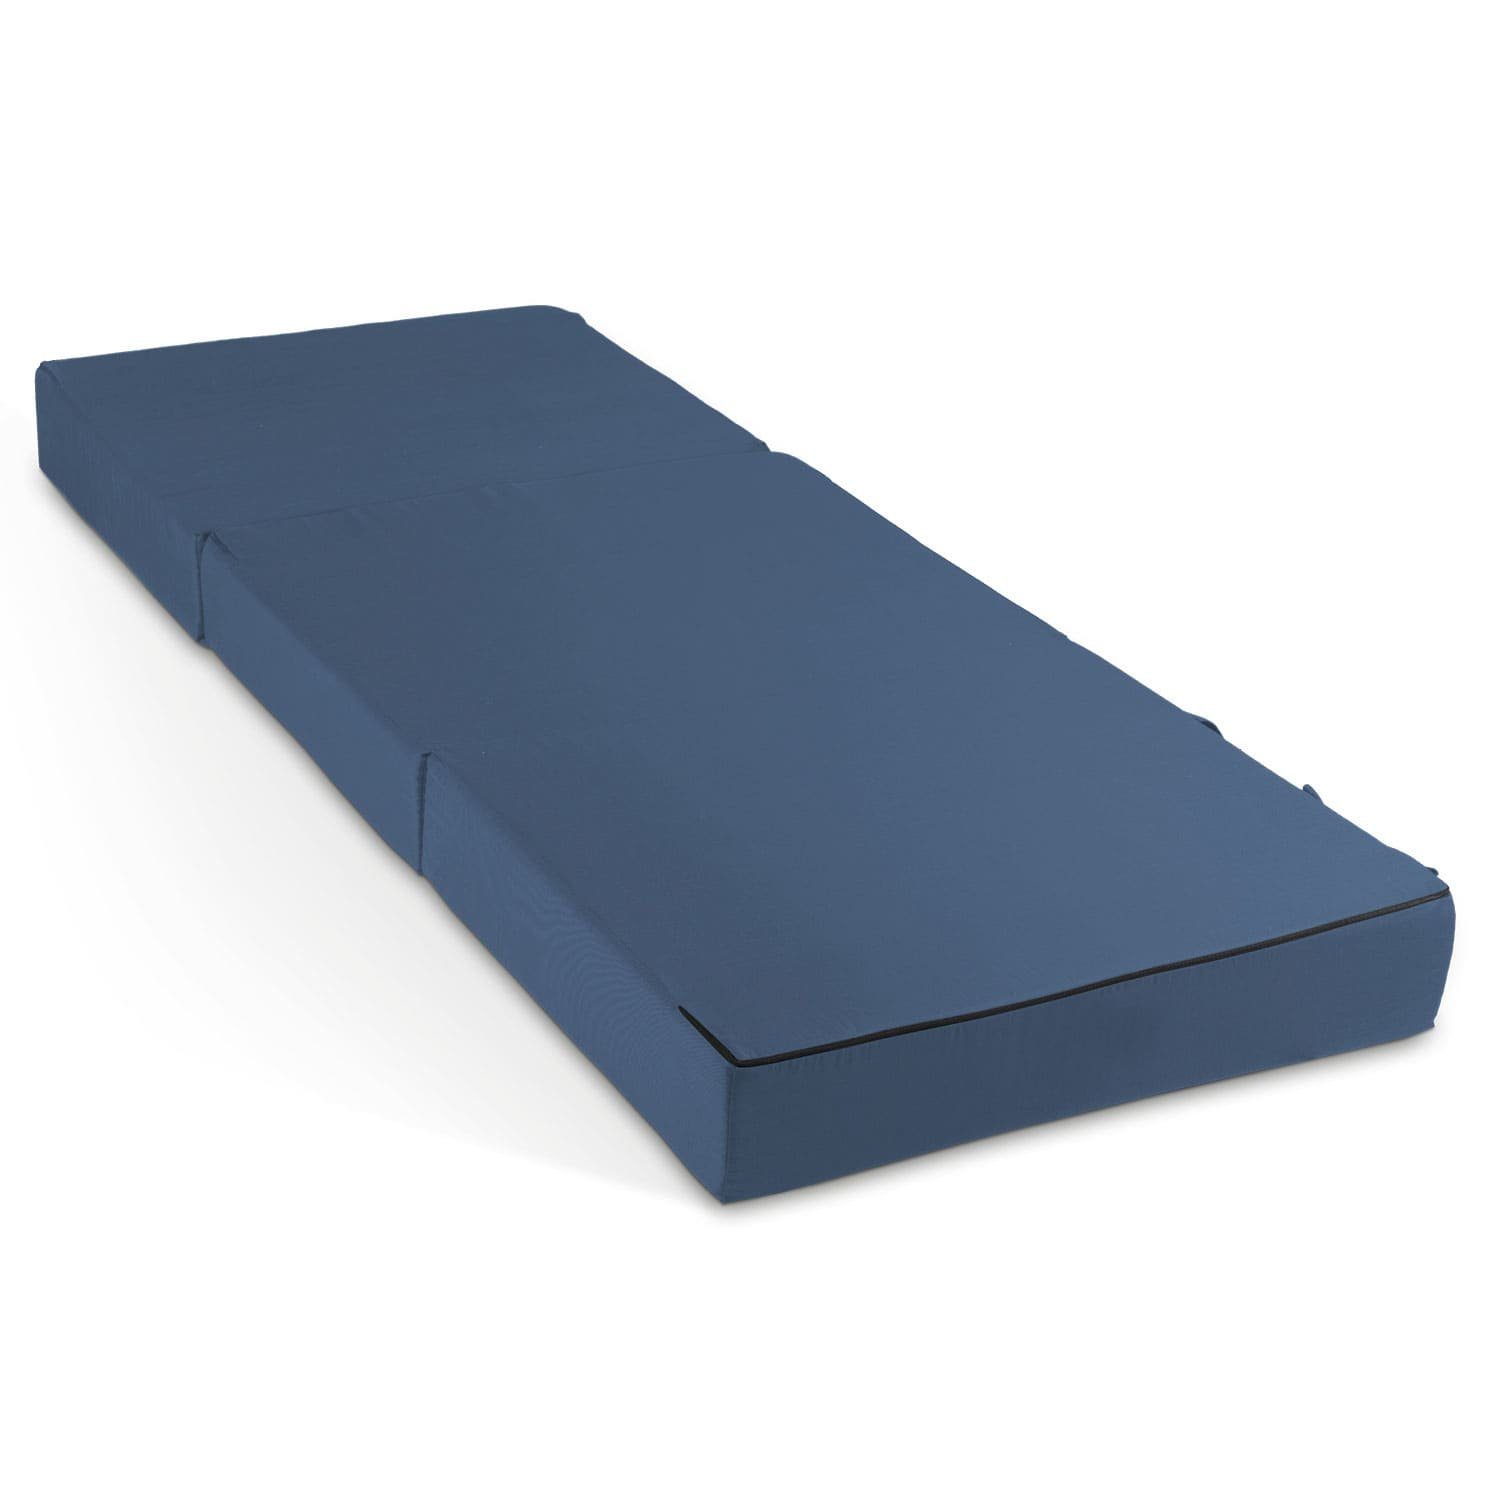 Klappmatratze Gästematratze, Bestschlaf, 15 cm hoch, (mit praktischen Tragegriffen) Blau